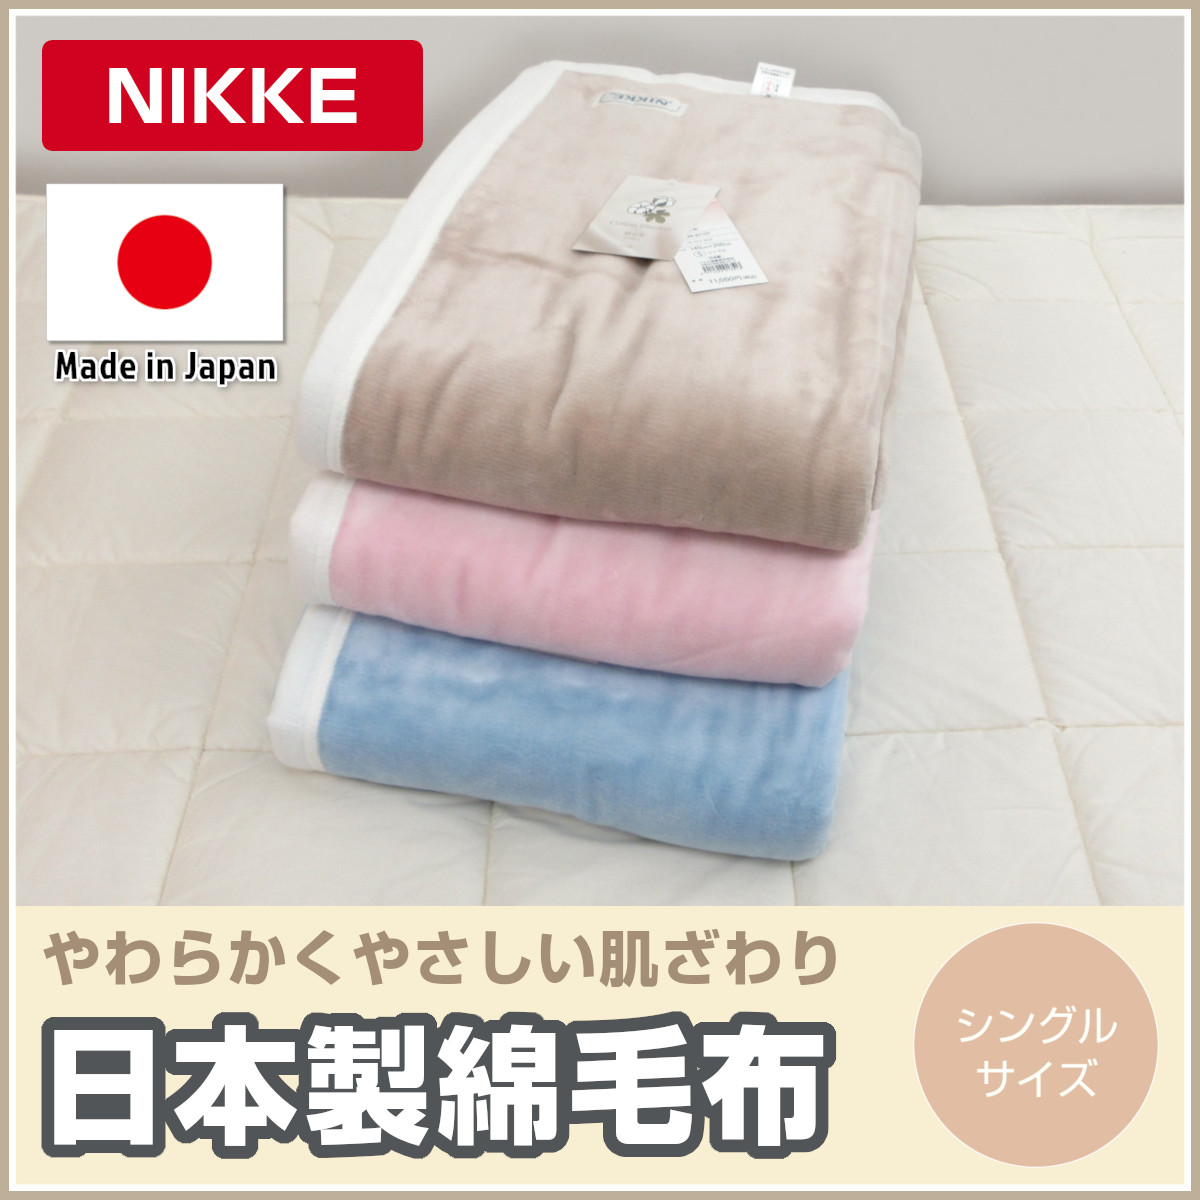 <310-101>日本製 NIKKE 綿毛布 シングル 140×200cm 綿100％ 天然素材 コットン ニッケ毛布 オールシーズン ウォッシャブル  毛布 無地カラー